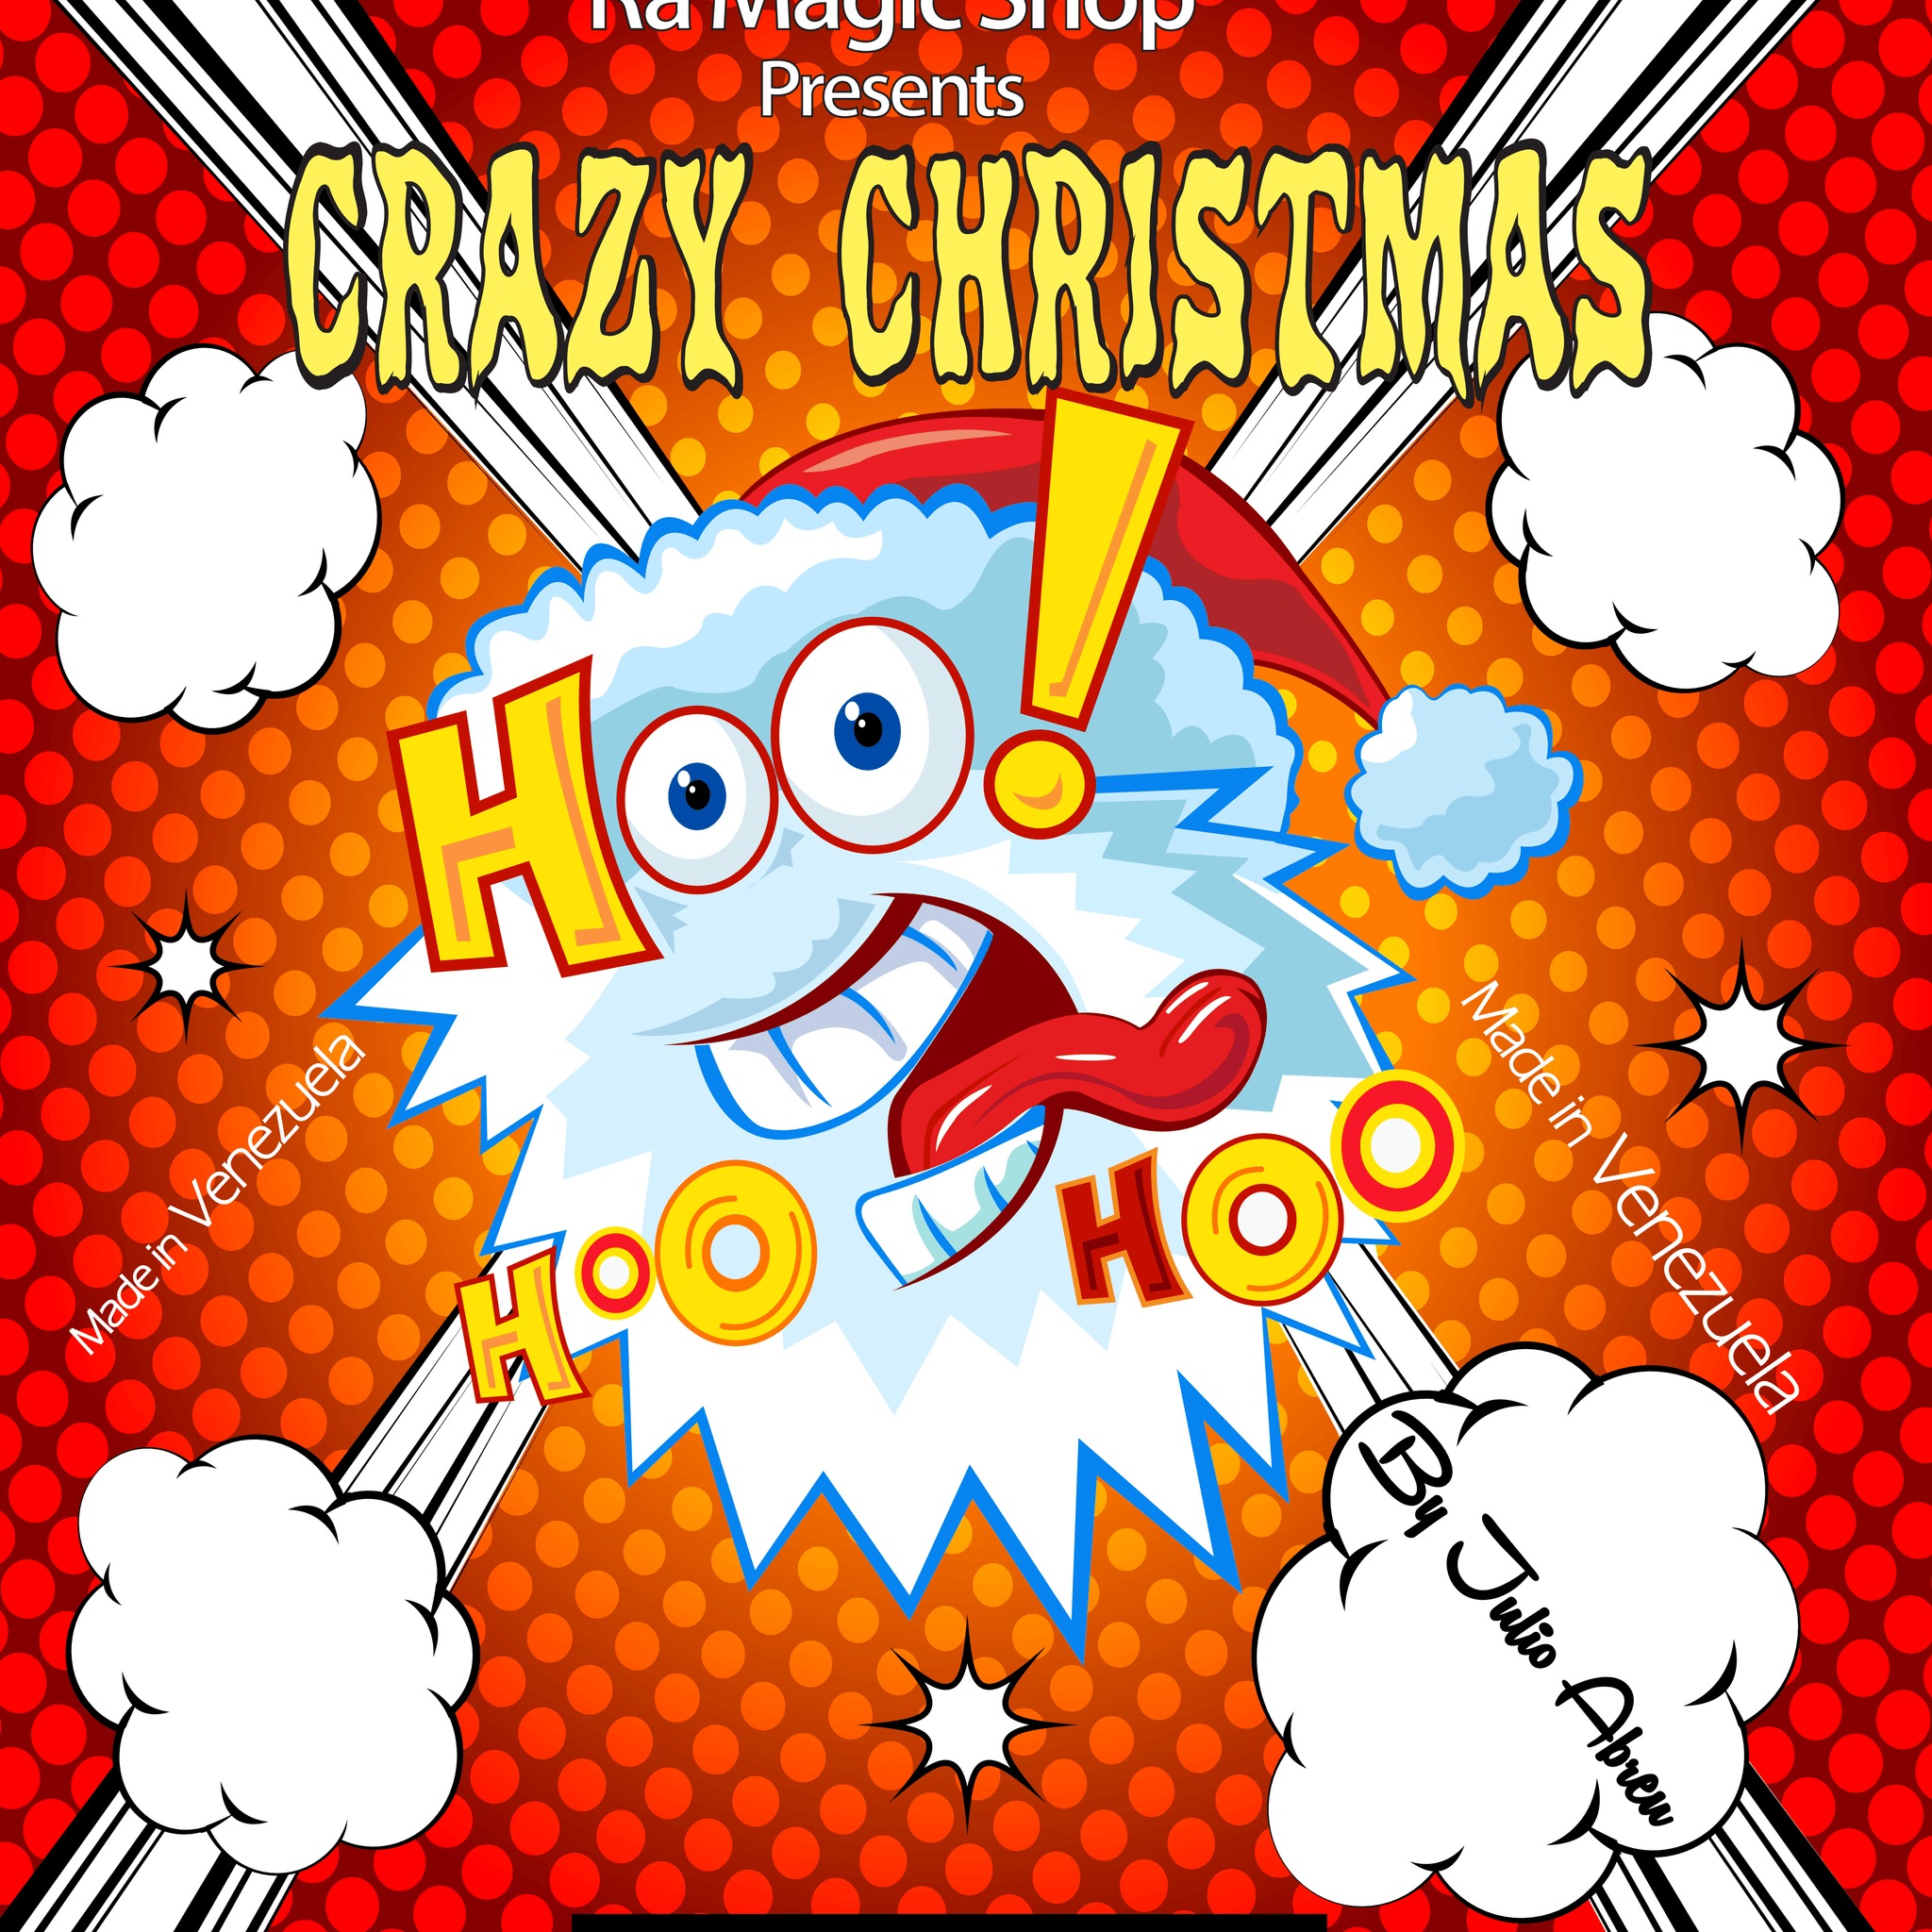 Crazy Christmas by Ra Magic Shop and Julio Abreu - Ra Magic Shop - #magic_trick#